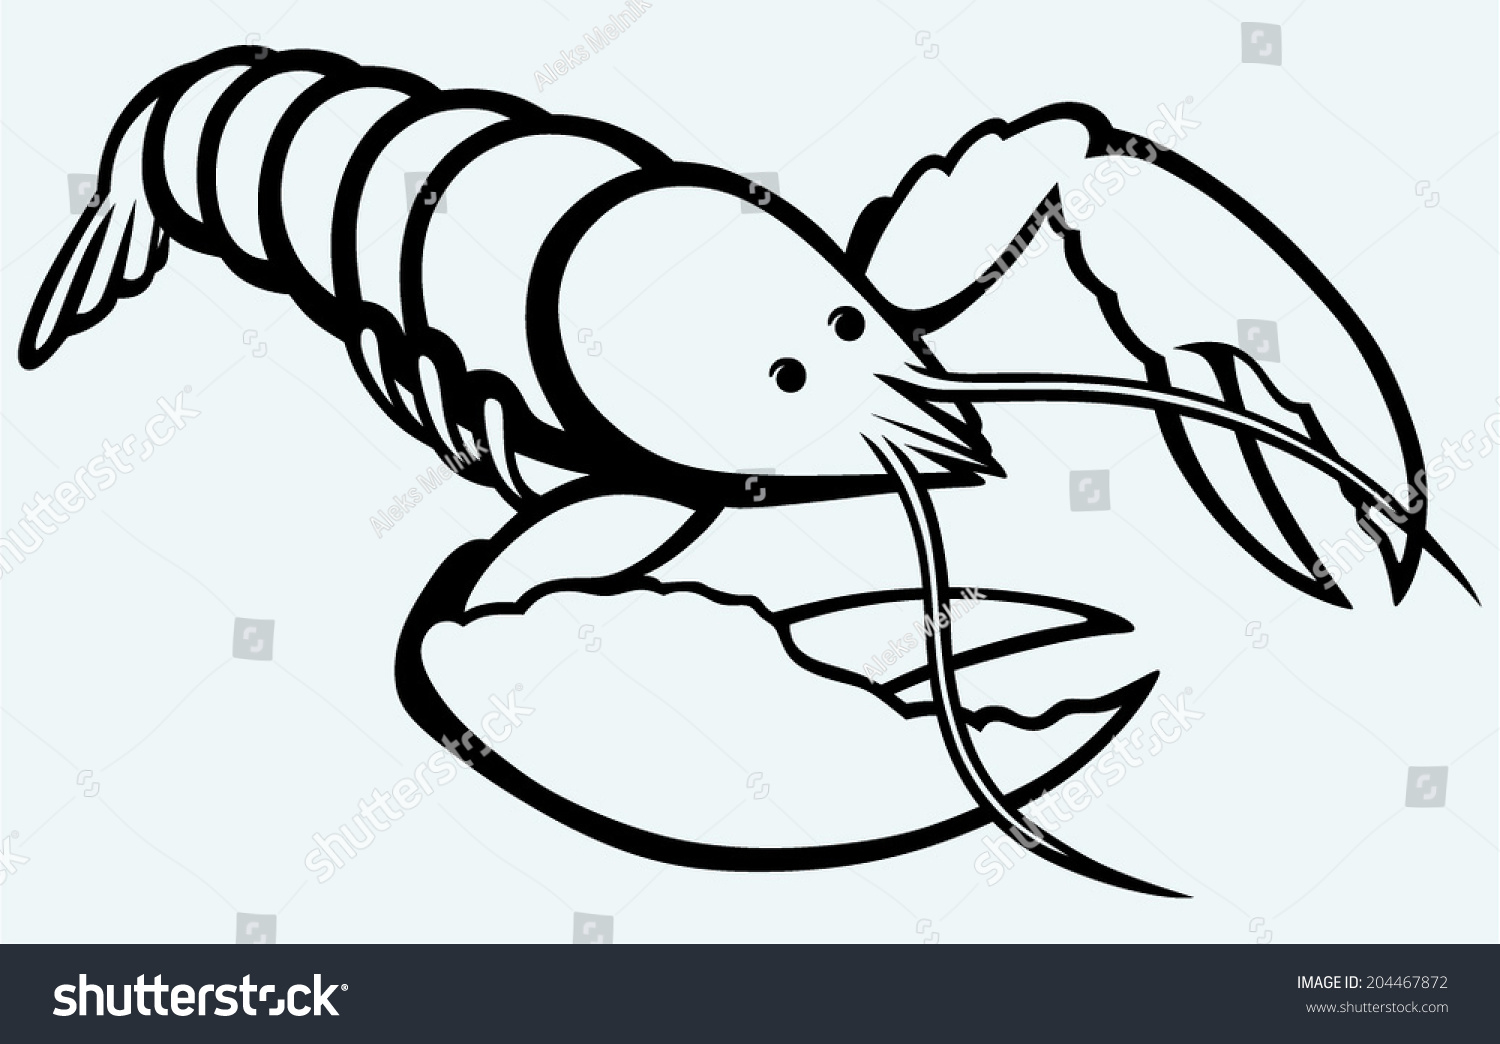 Edit Vectors Free Online - Crayfish sketch. | Shutterstock Editor